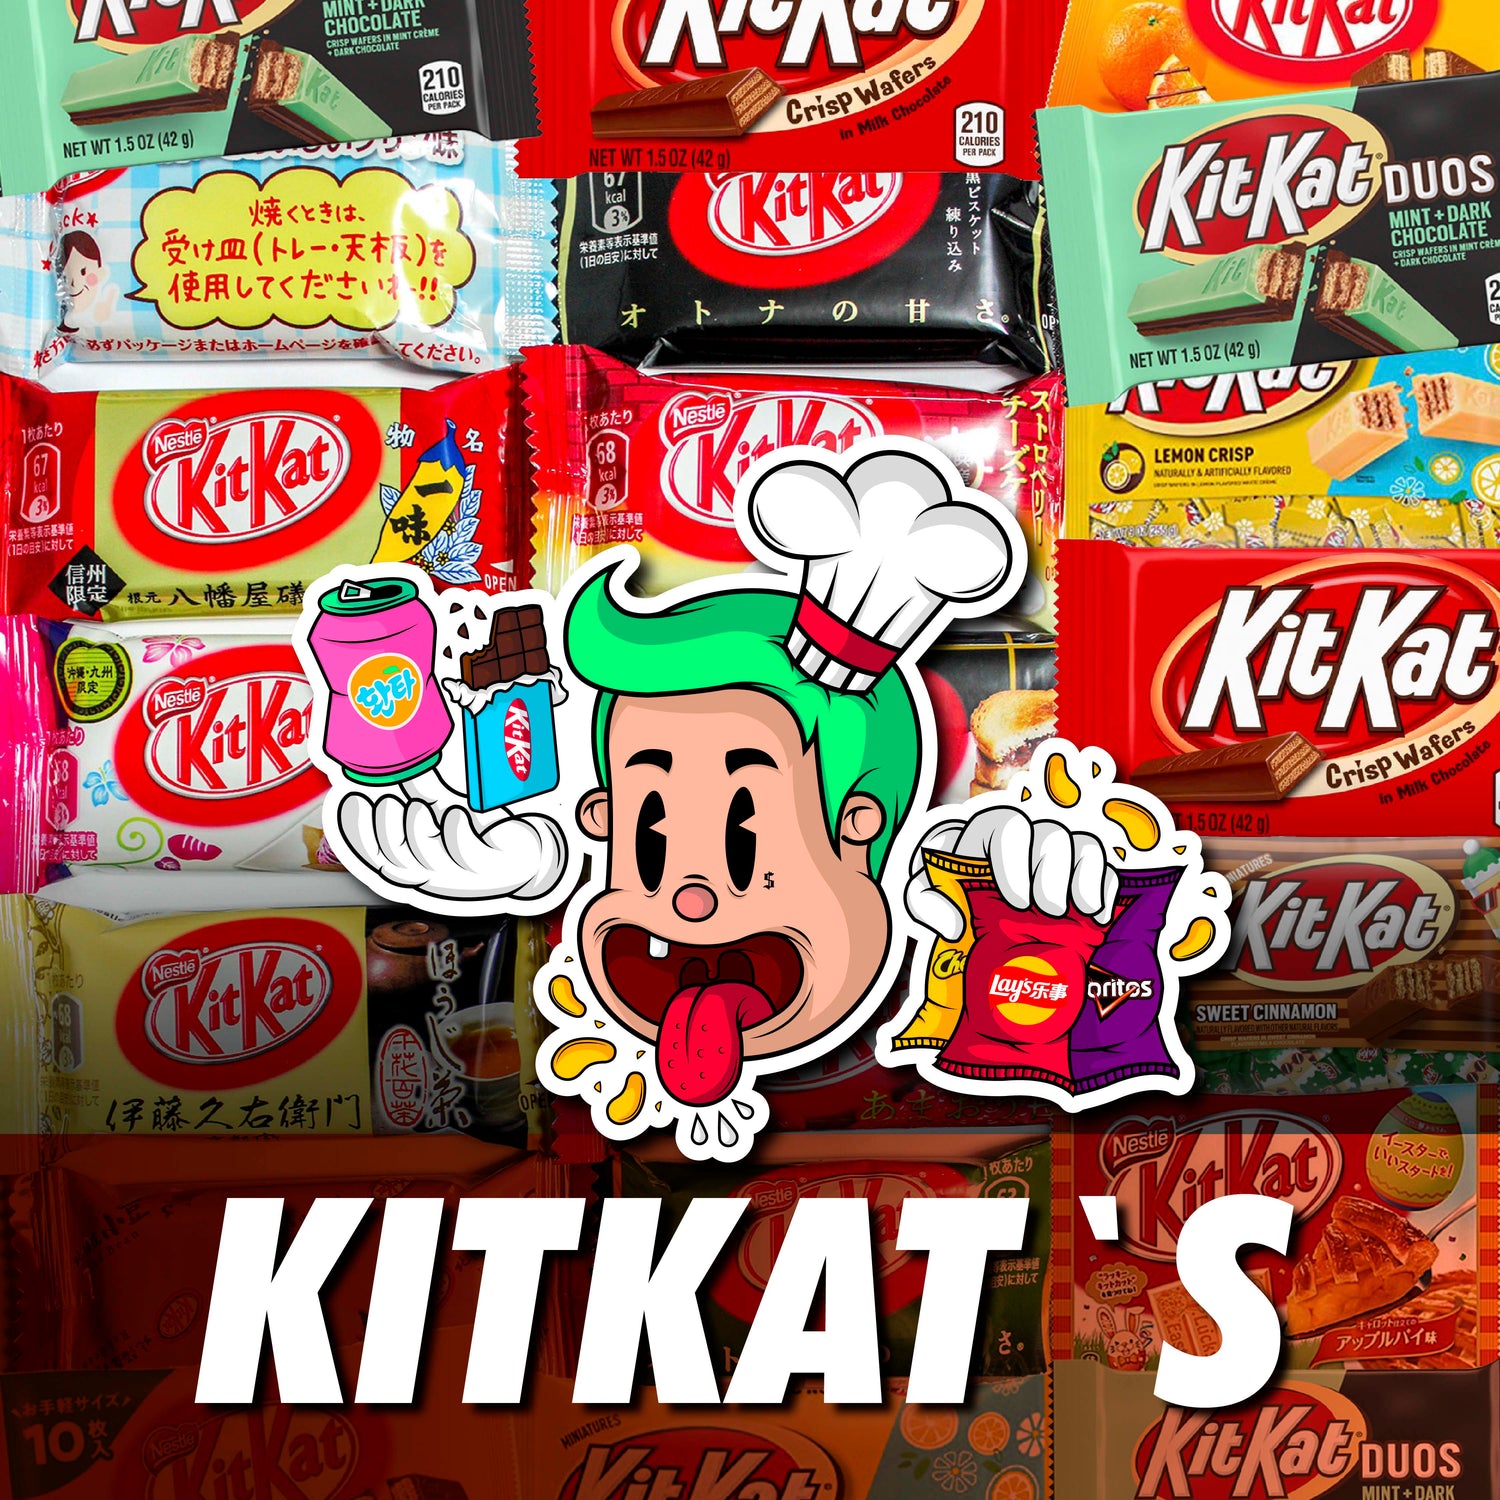 KitKat's